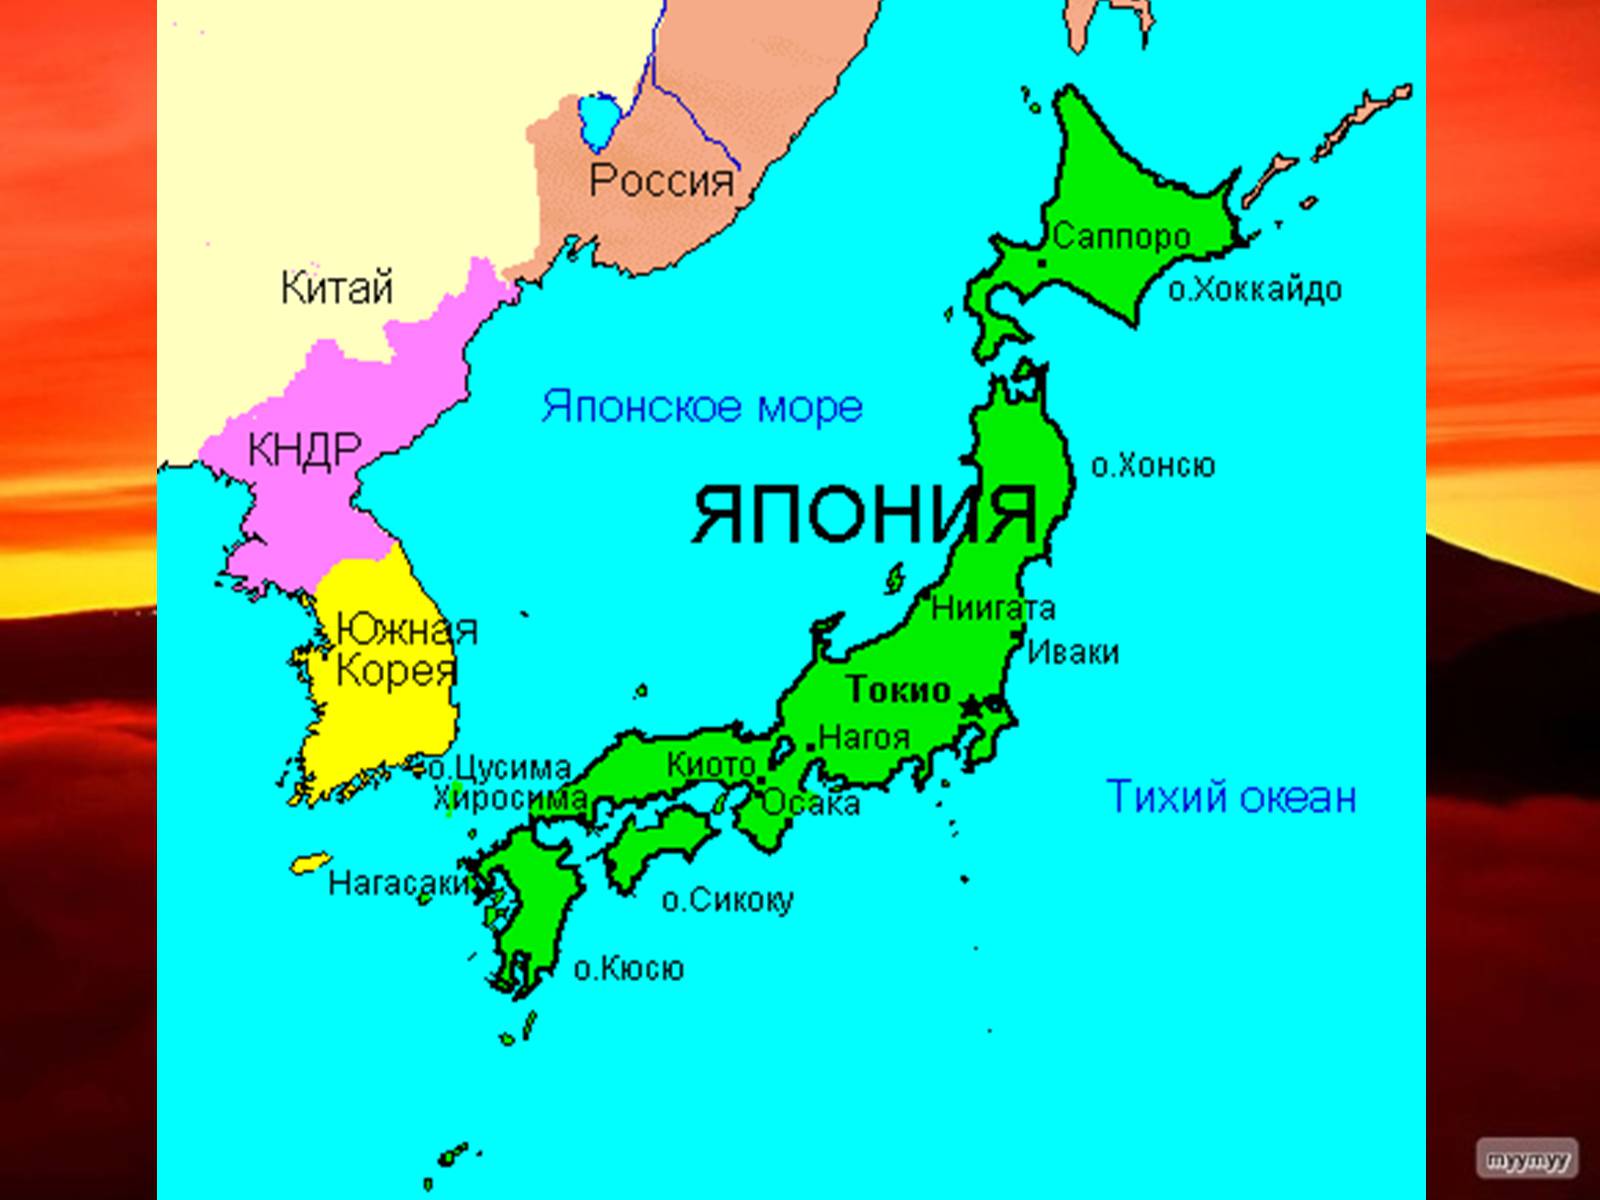 Какие морские соседи. Географическое положение Японии карта. Острова Хоккайдо и Хонсю. Политическая карта Японии. Хоккайдо Хонсю Сикоку Кюсю острова.